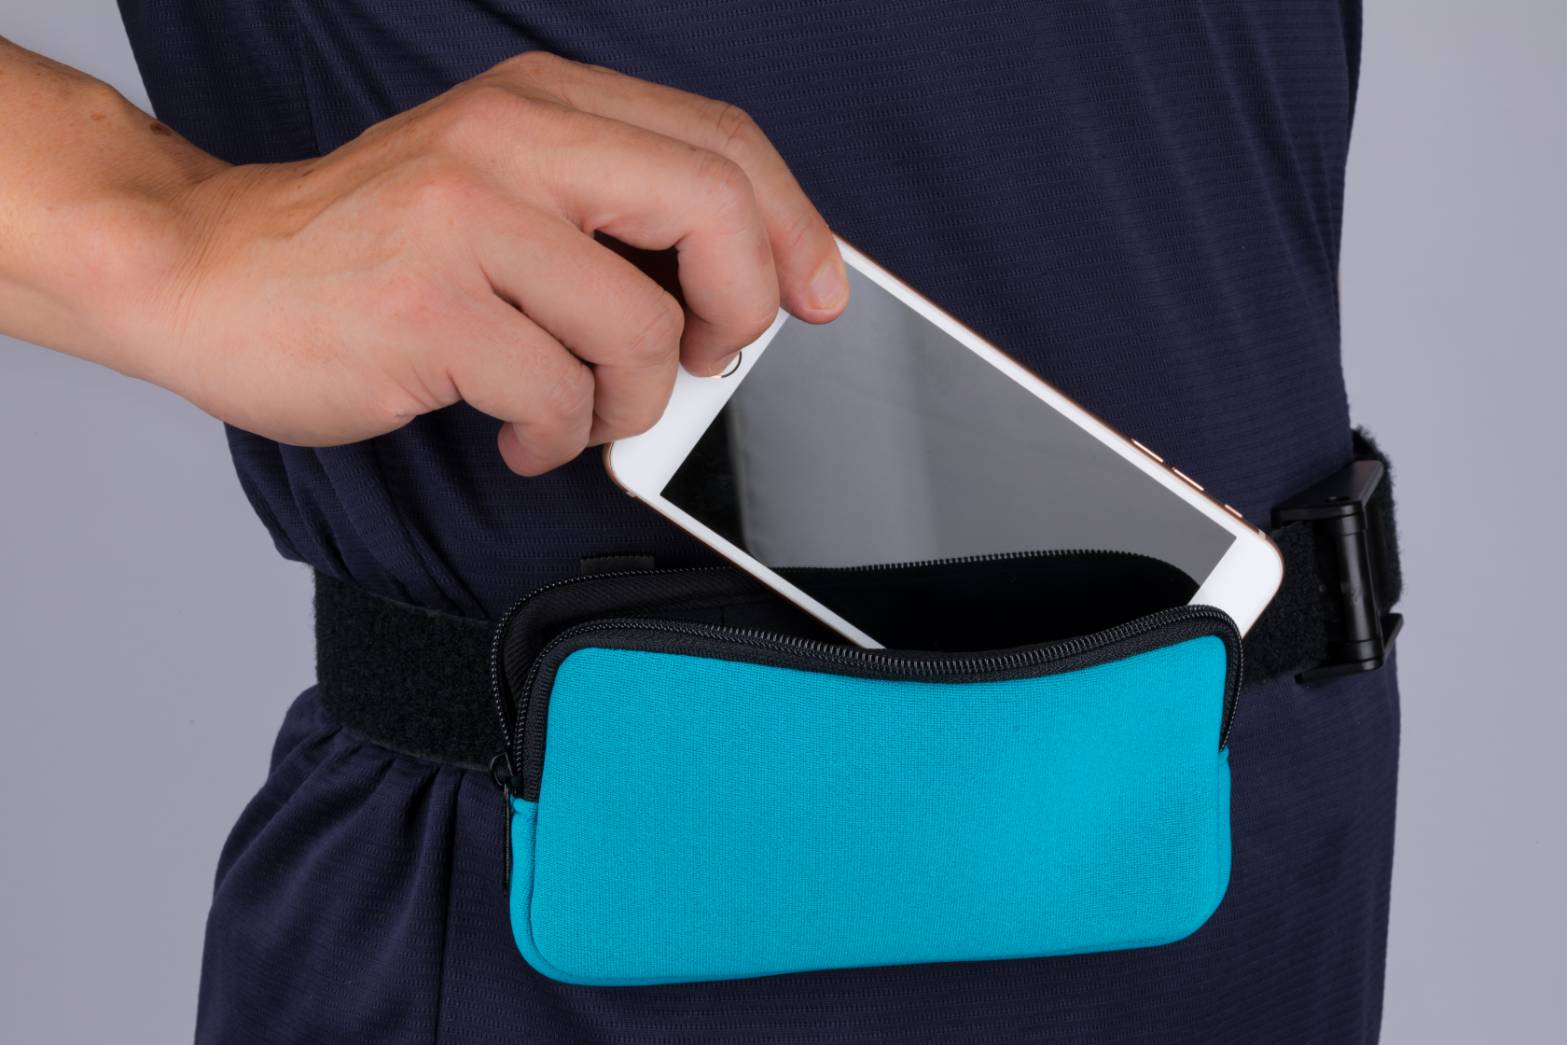 Swivel belt clip+ cell phone,glasses bag